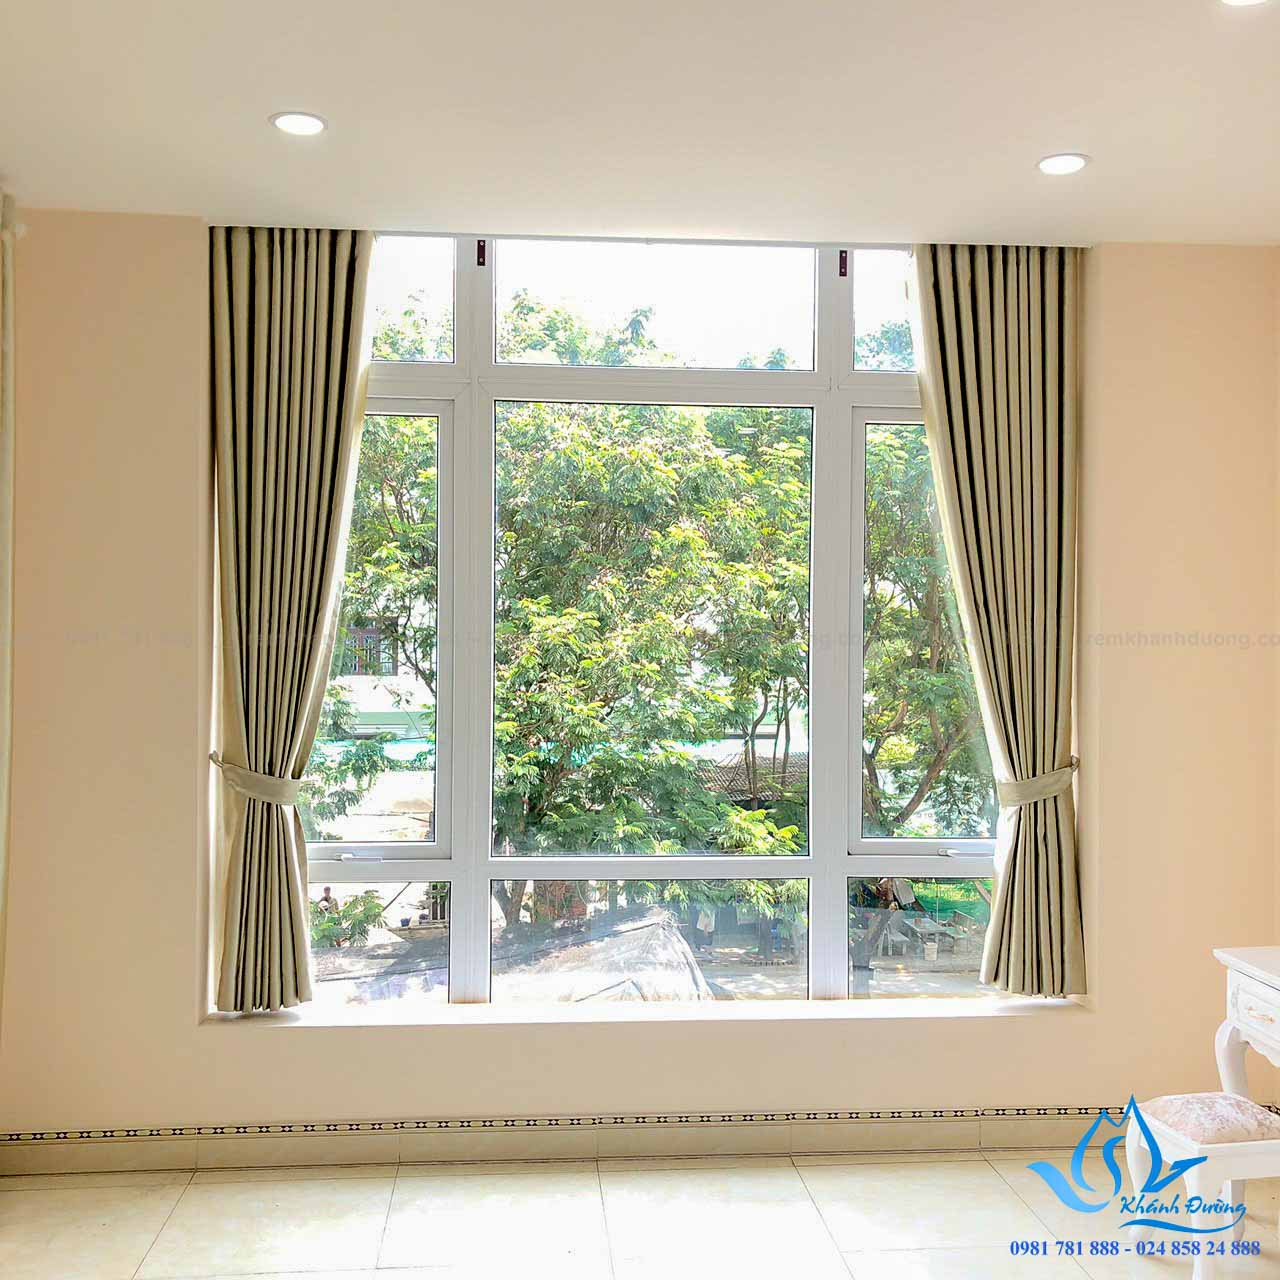 Muốn tạo cảm giác sang trọng và đơn giản cho căn phòng của bạn? Rèm cửa sổ nhỏ đơn màu là lựa chọn tuyệt vời. Với tông màu nhẹ nhàng và vải đẹp, rèm sẽ giúp tăng tính thẩm mỹ cho căn phòng của bạn một cách dễ dàng.